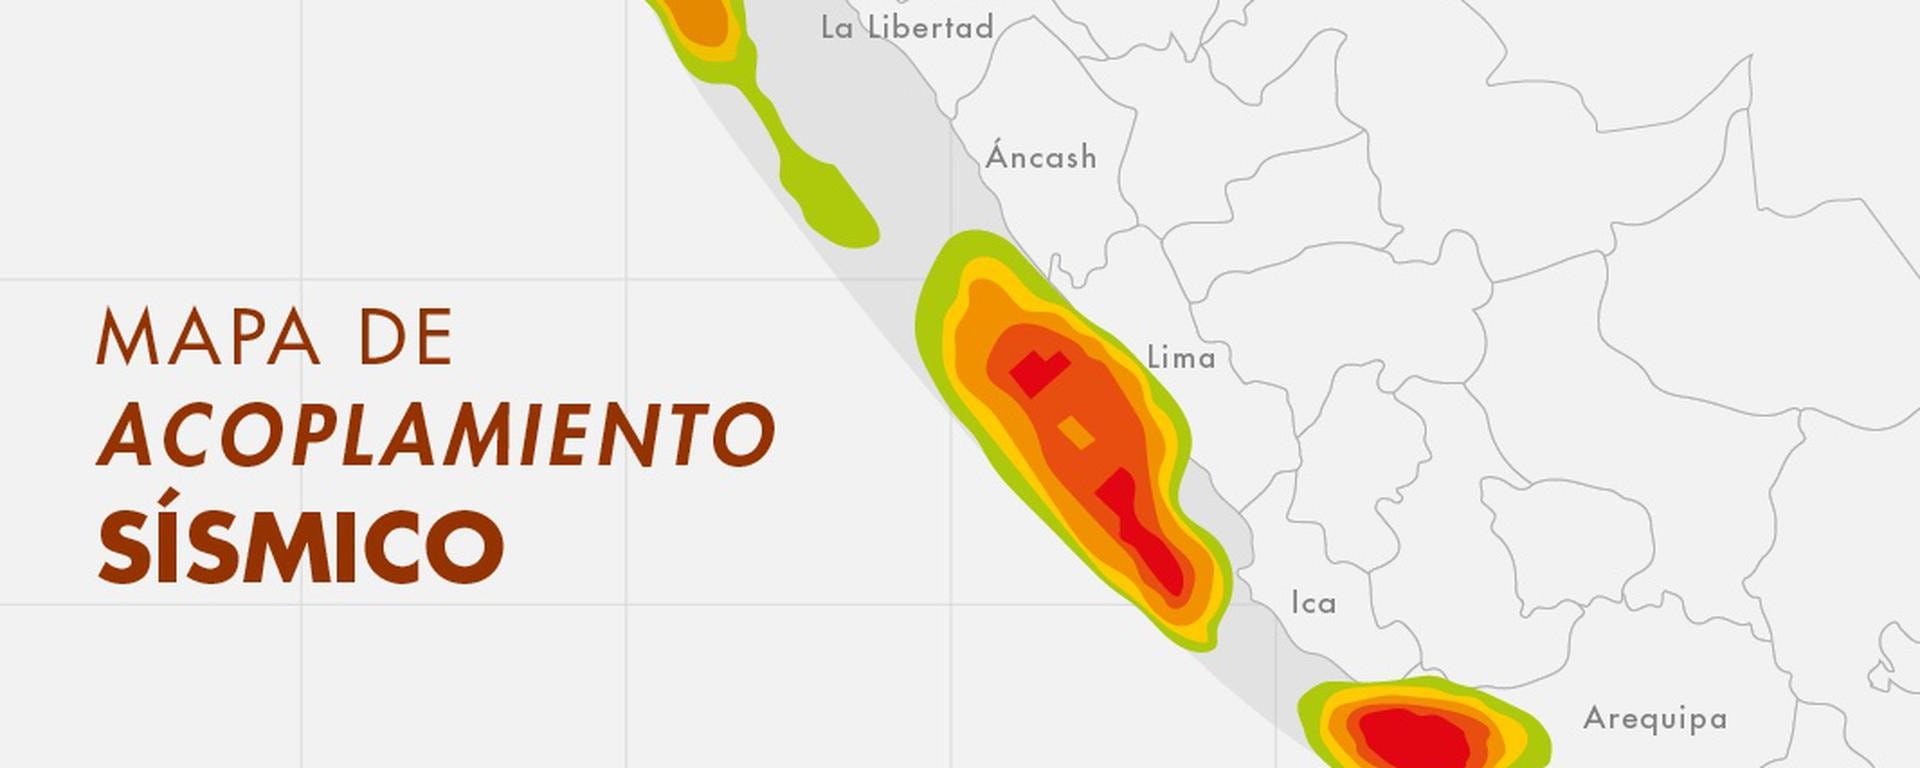 Terremoto en Lima: el mapa que explica por qué se ha identificado el dónde y el cómo